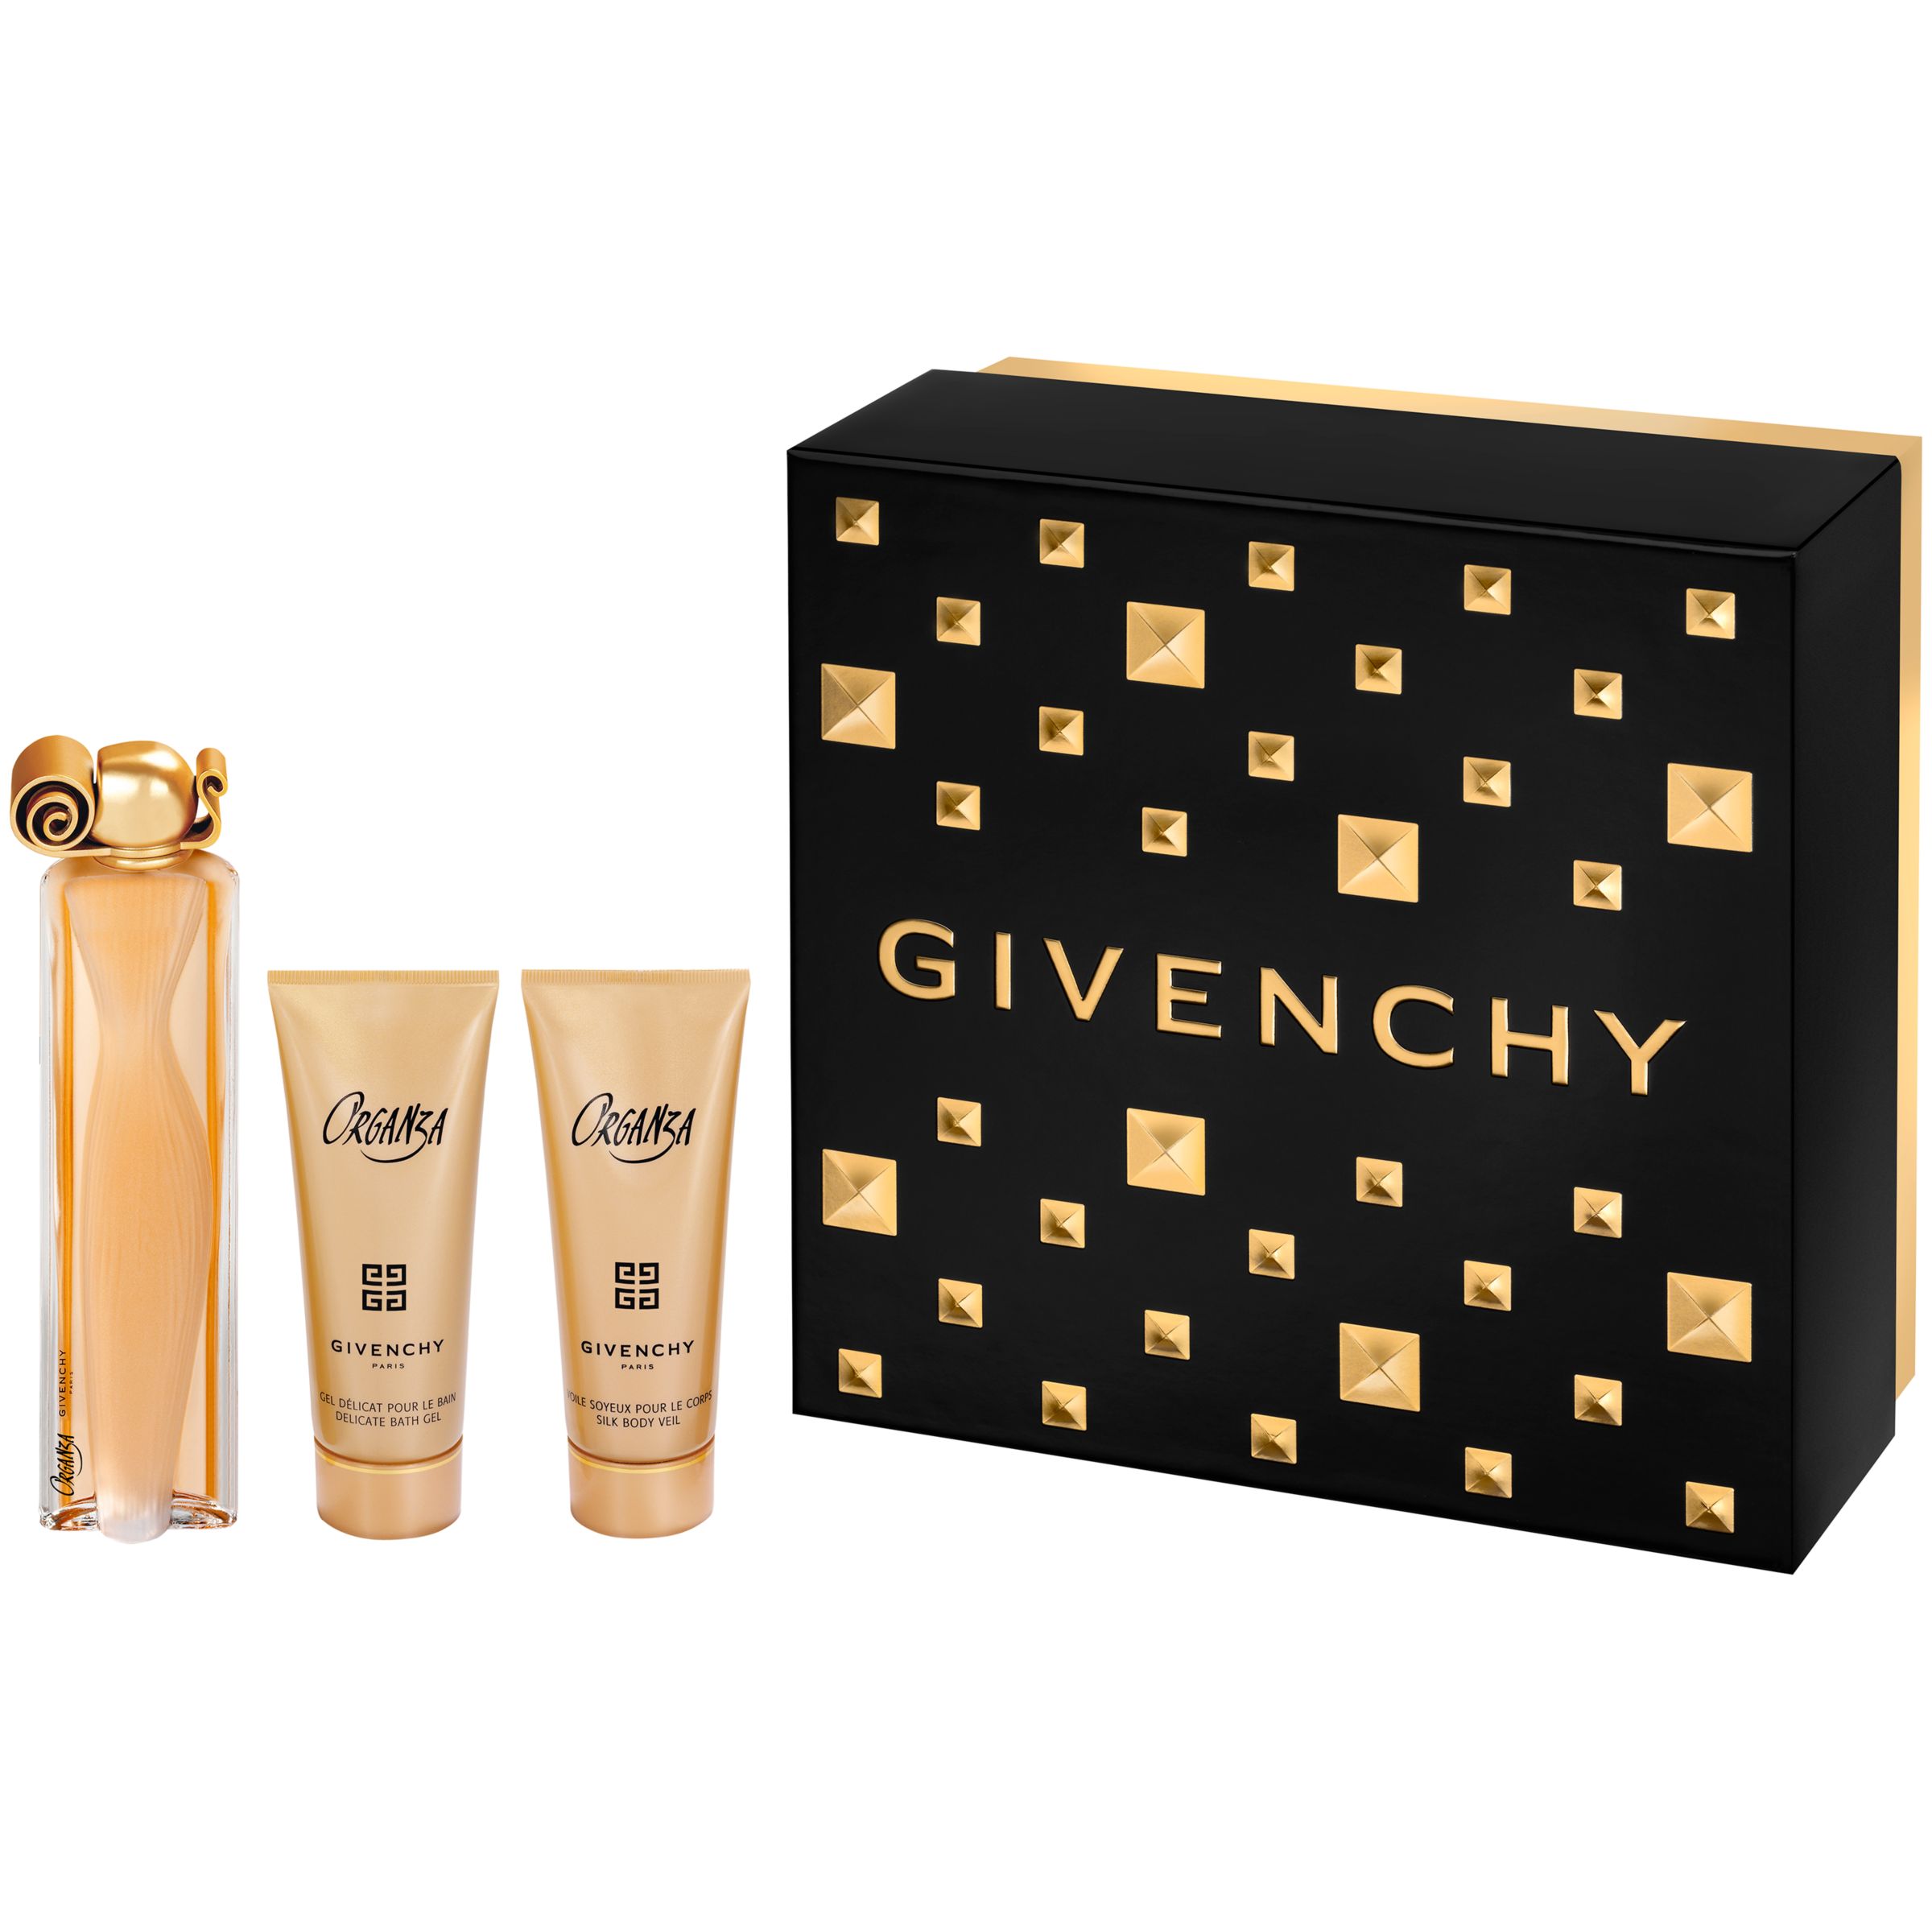 givenchy organza perfume gift set